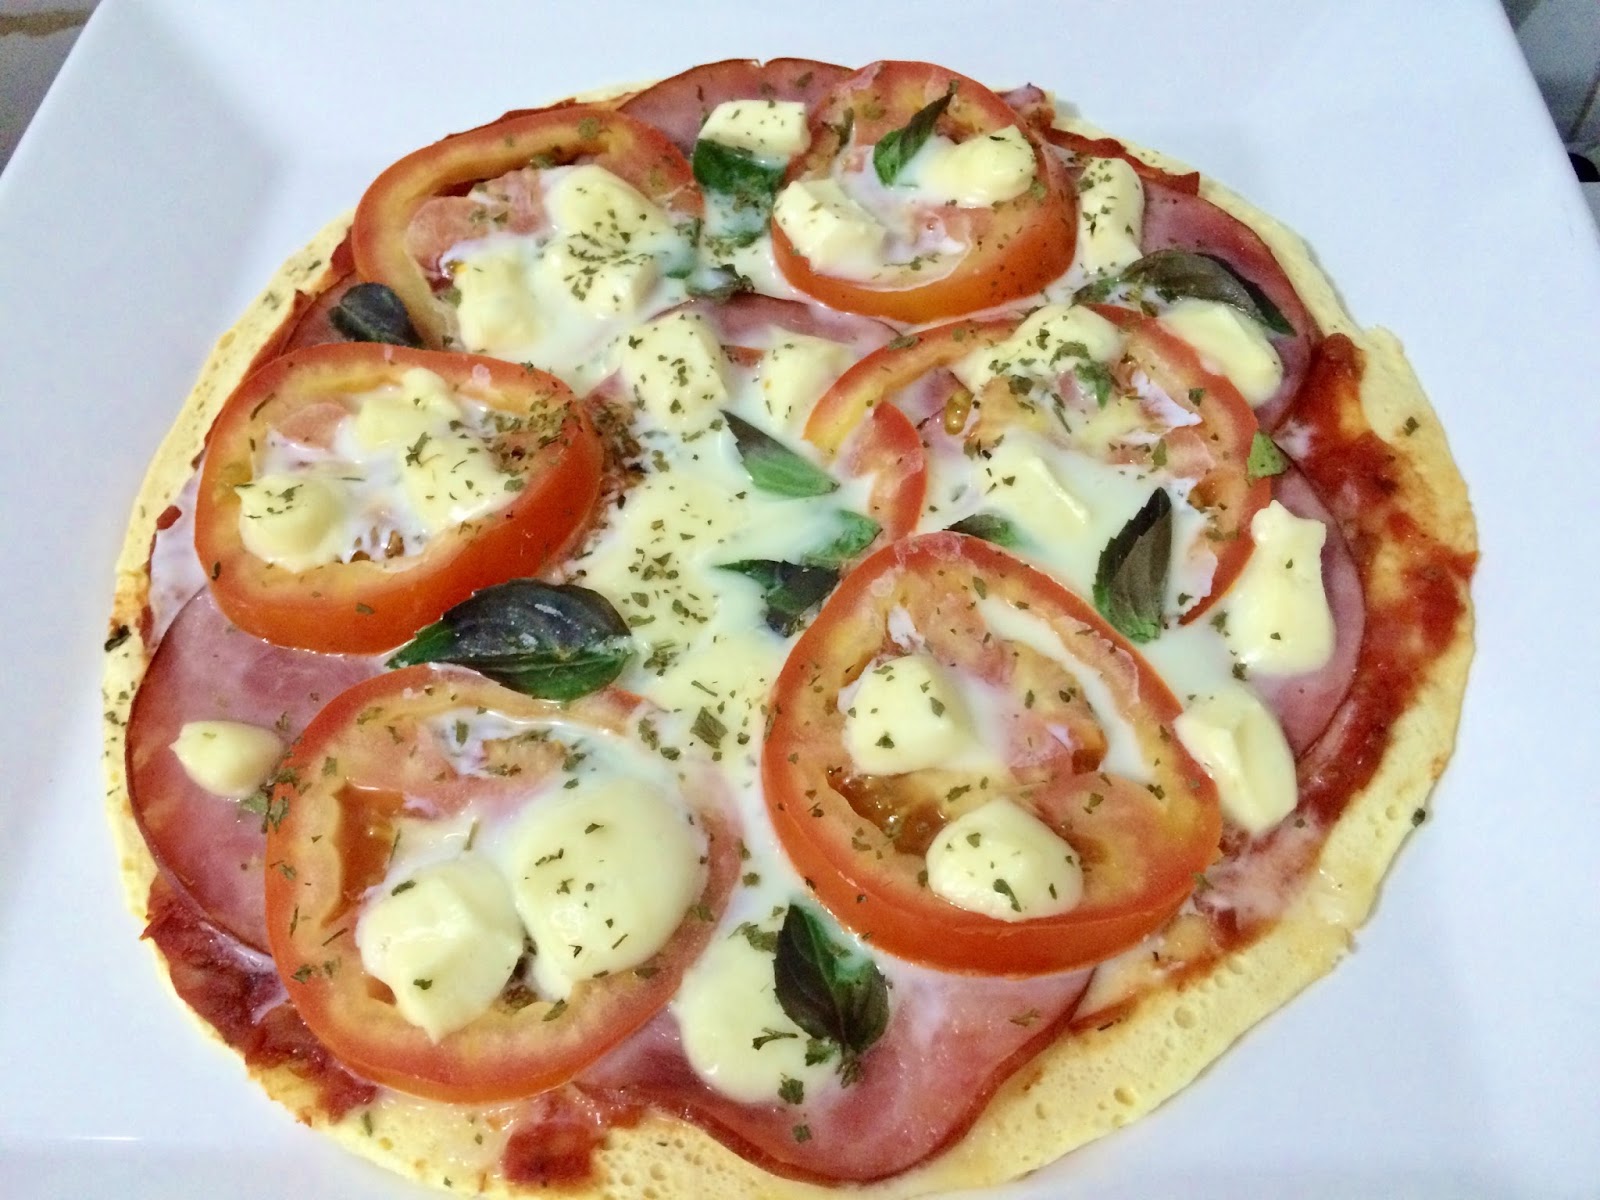 Pizza de Abobrinha com Massa integral - Picture of Super Pizza Pan